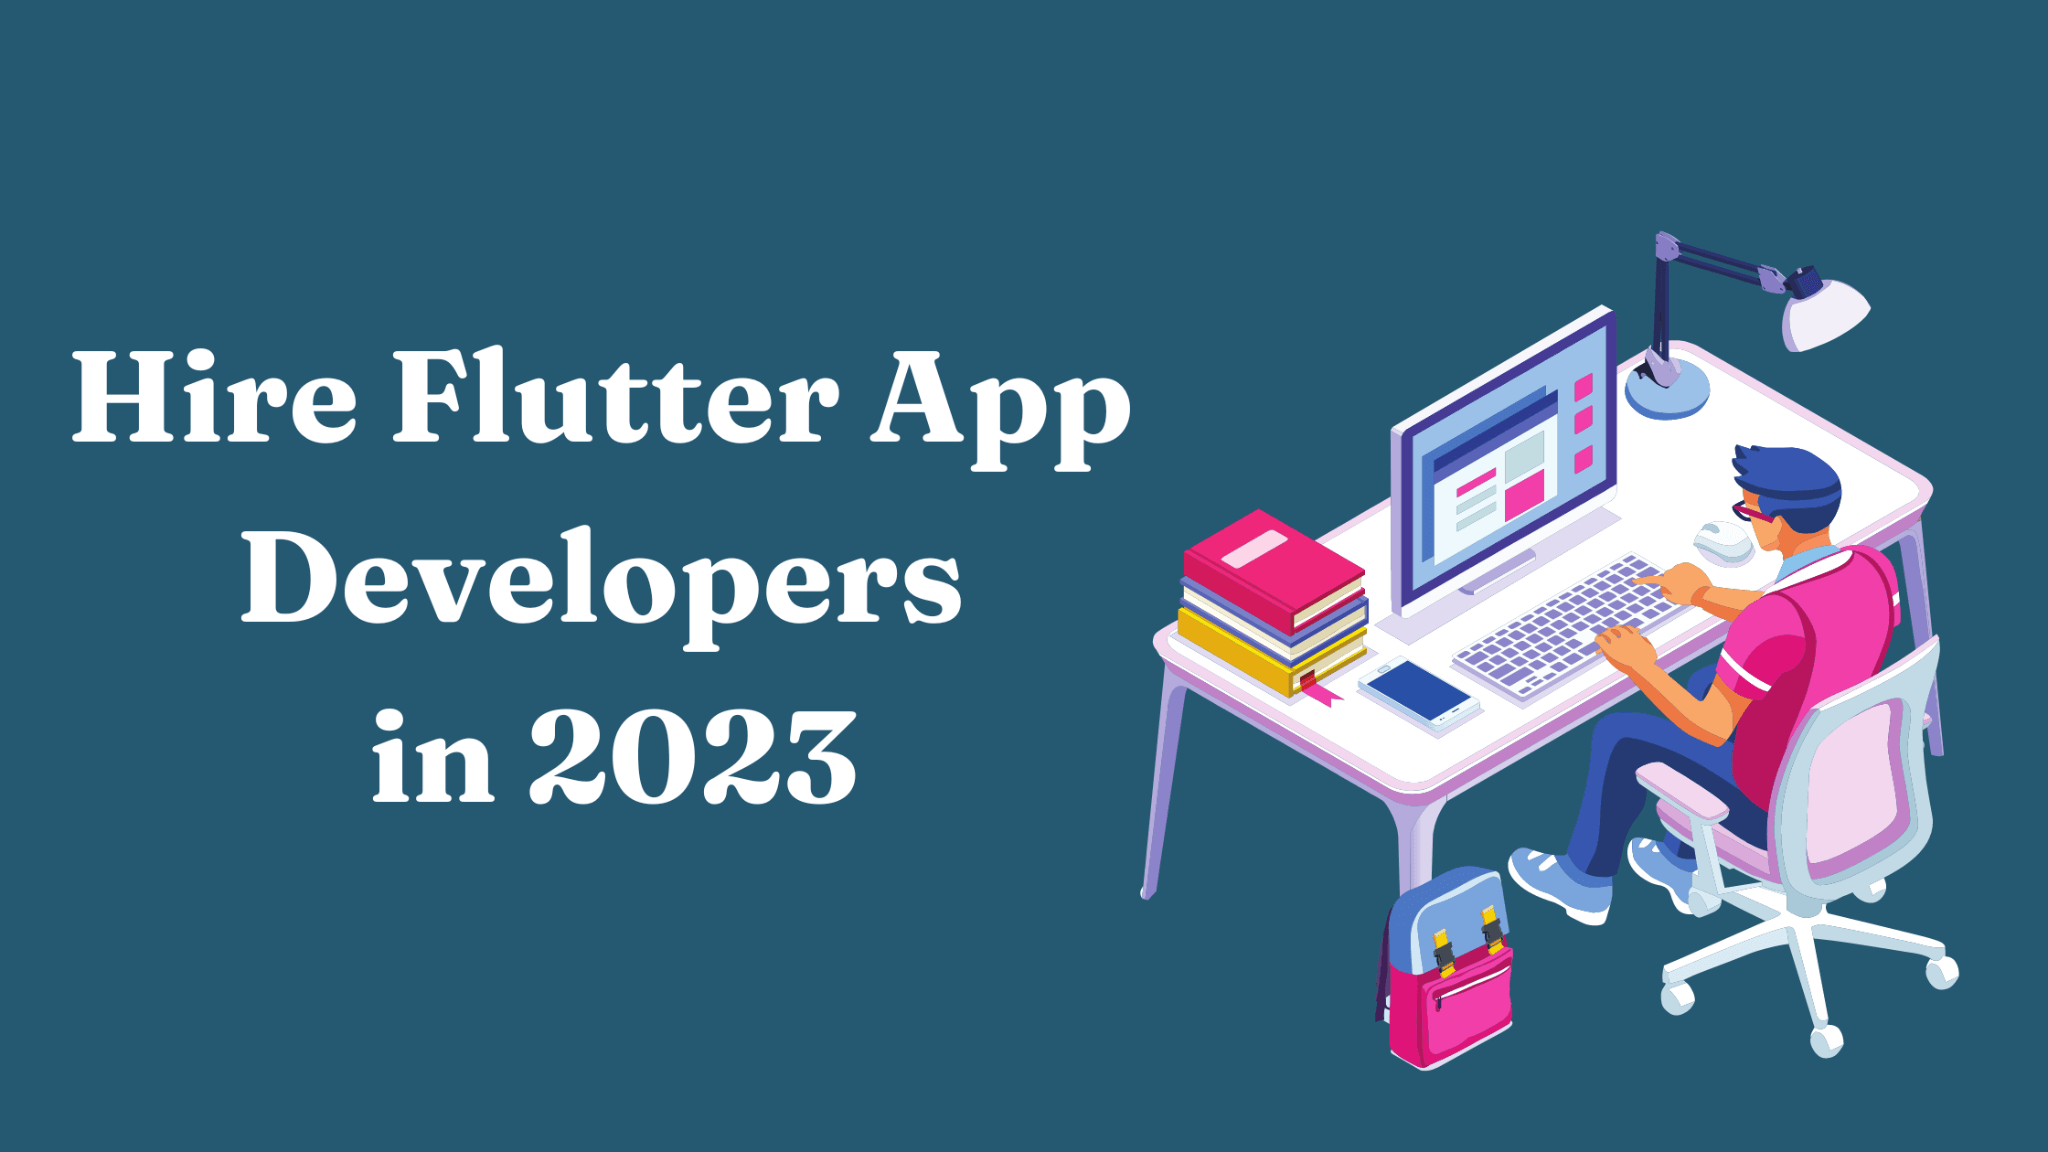 Hire Flutter App Developers in 2023